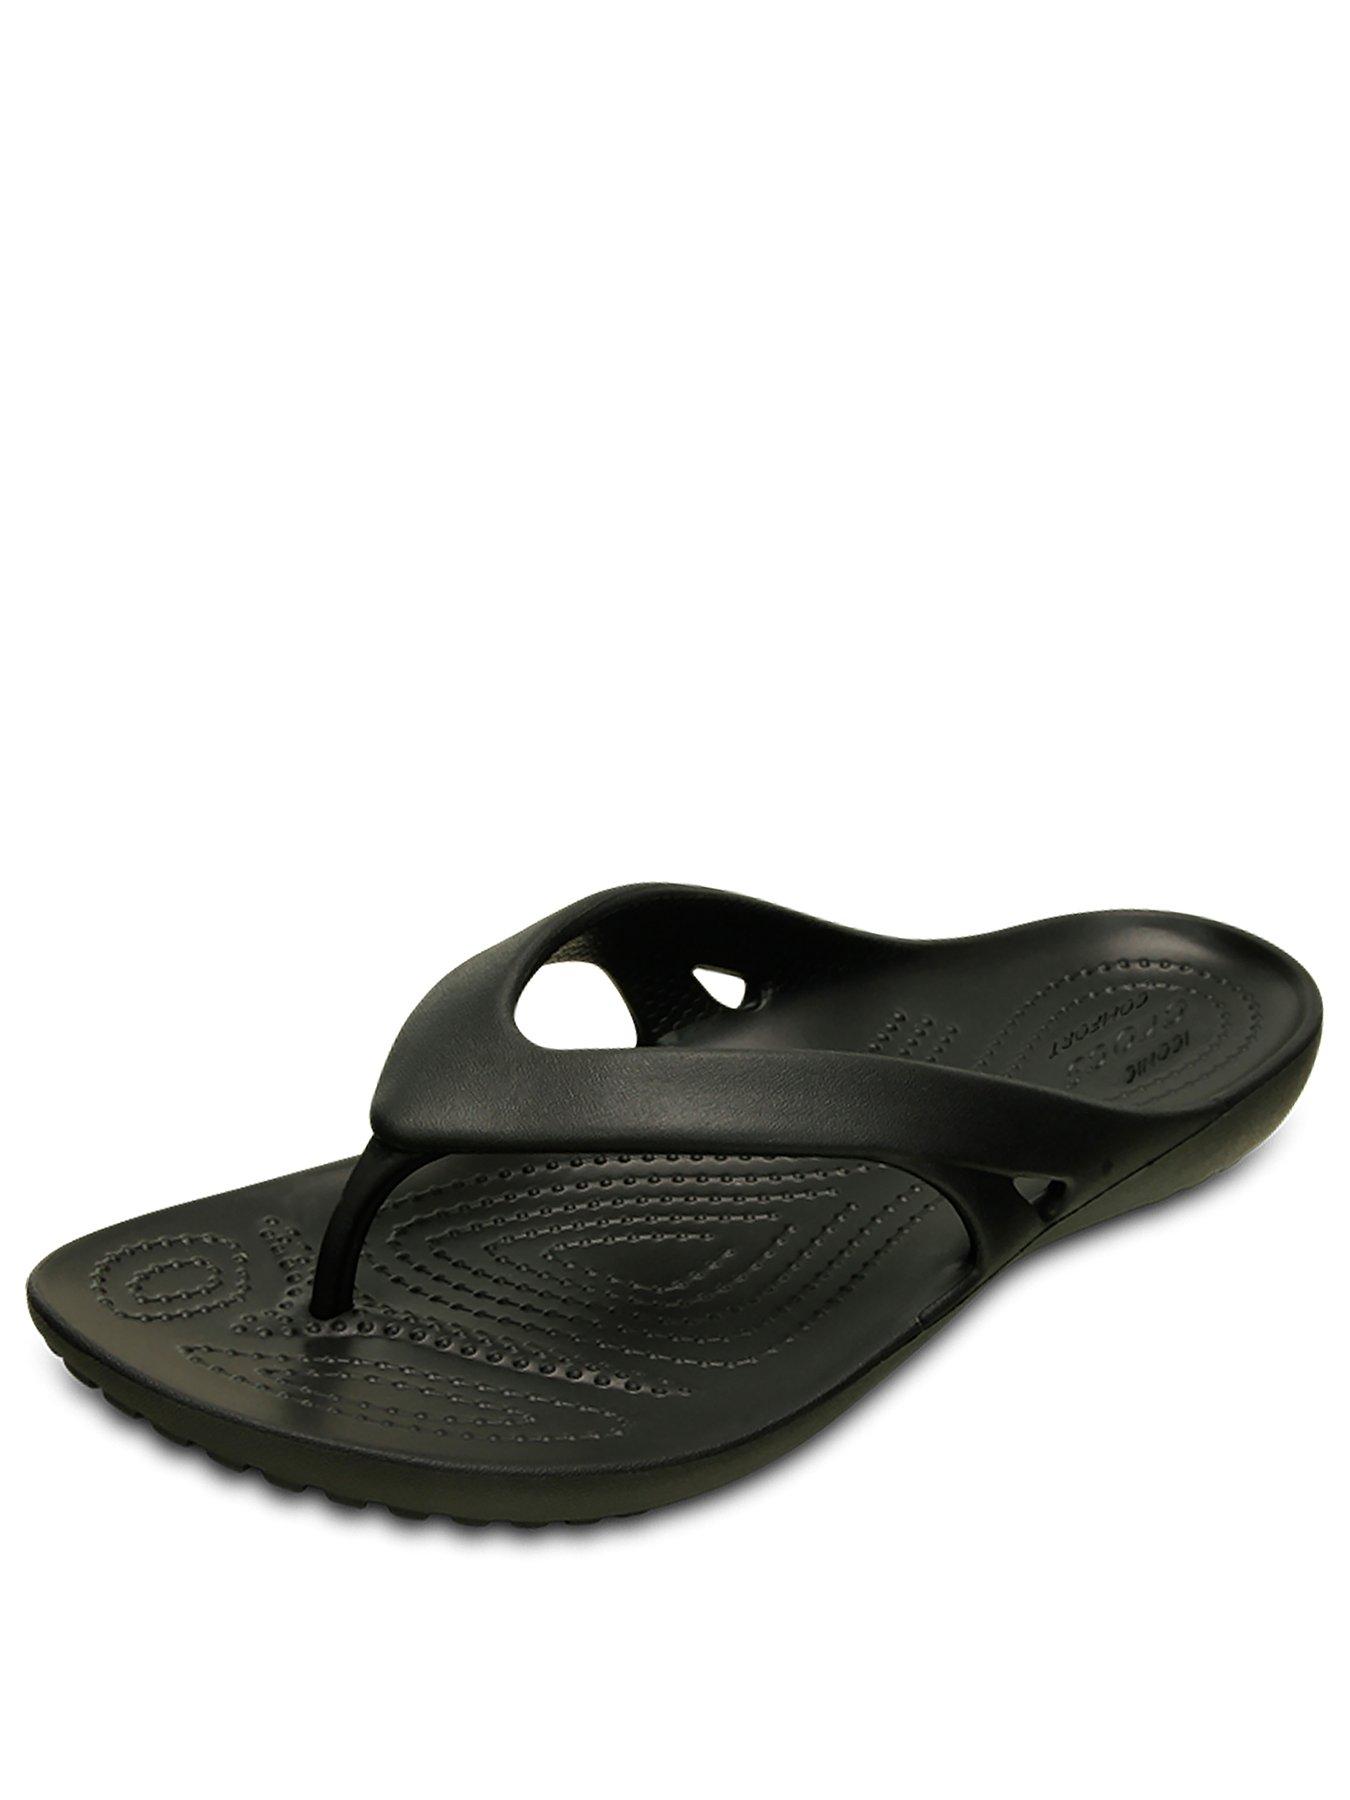 crocs kadee flip flops